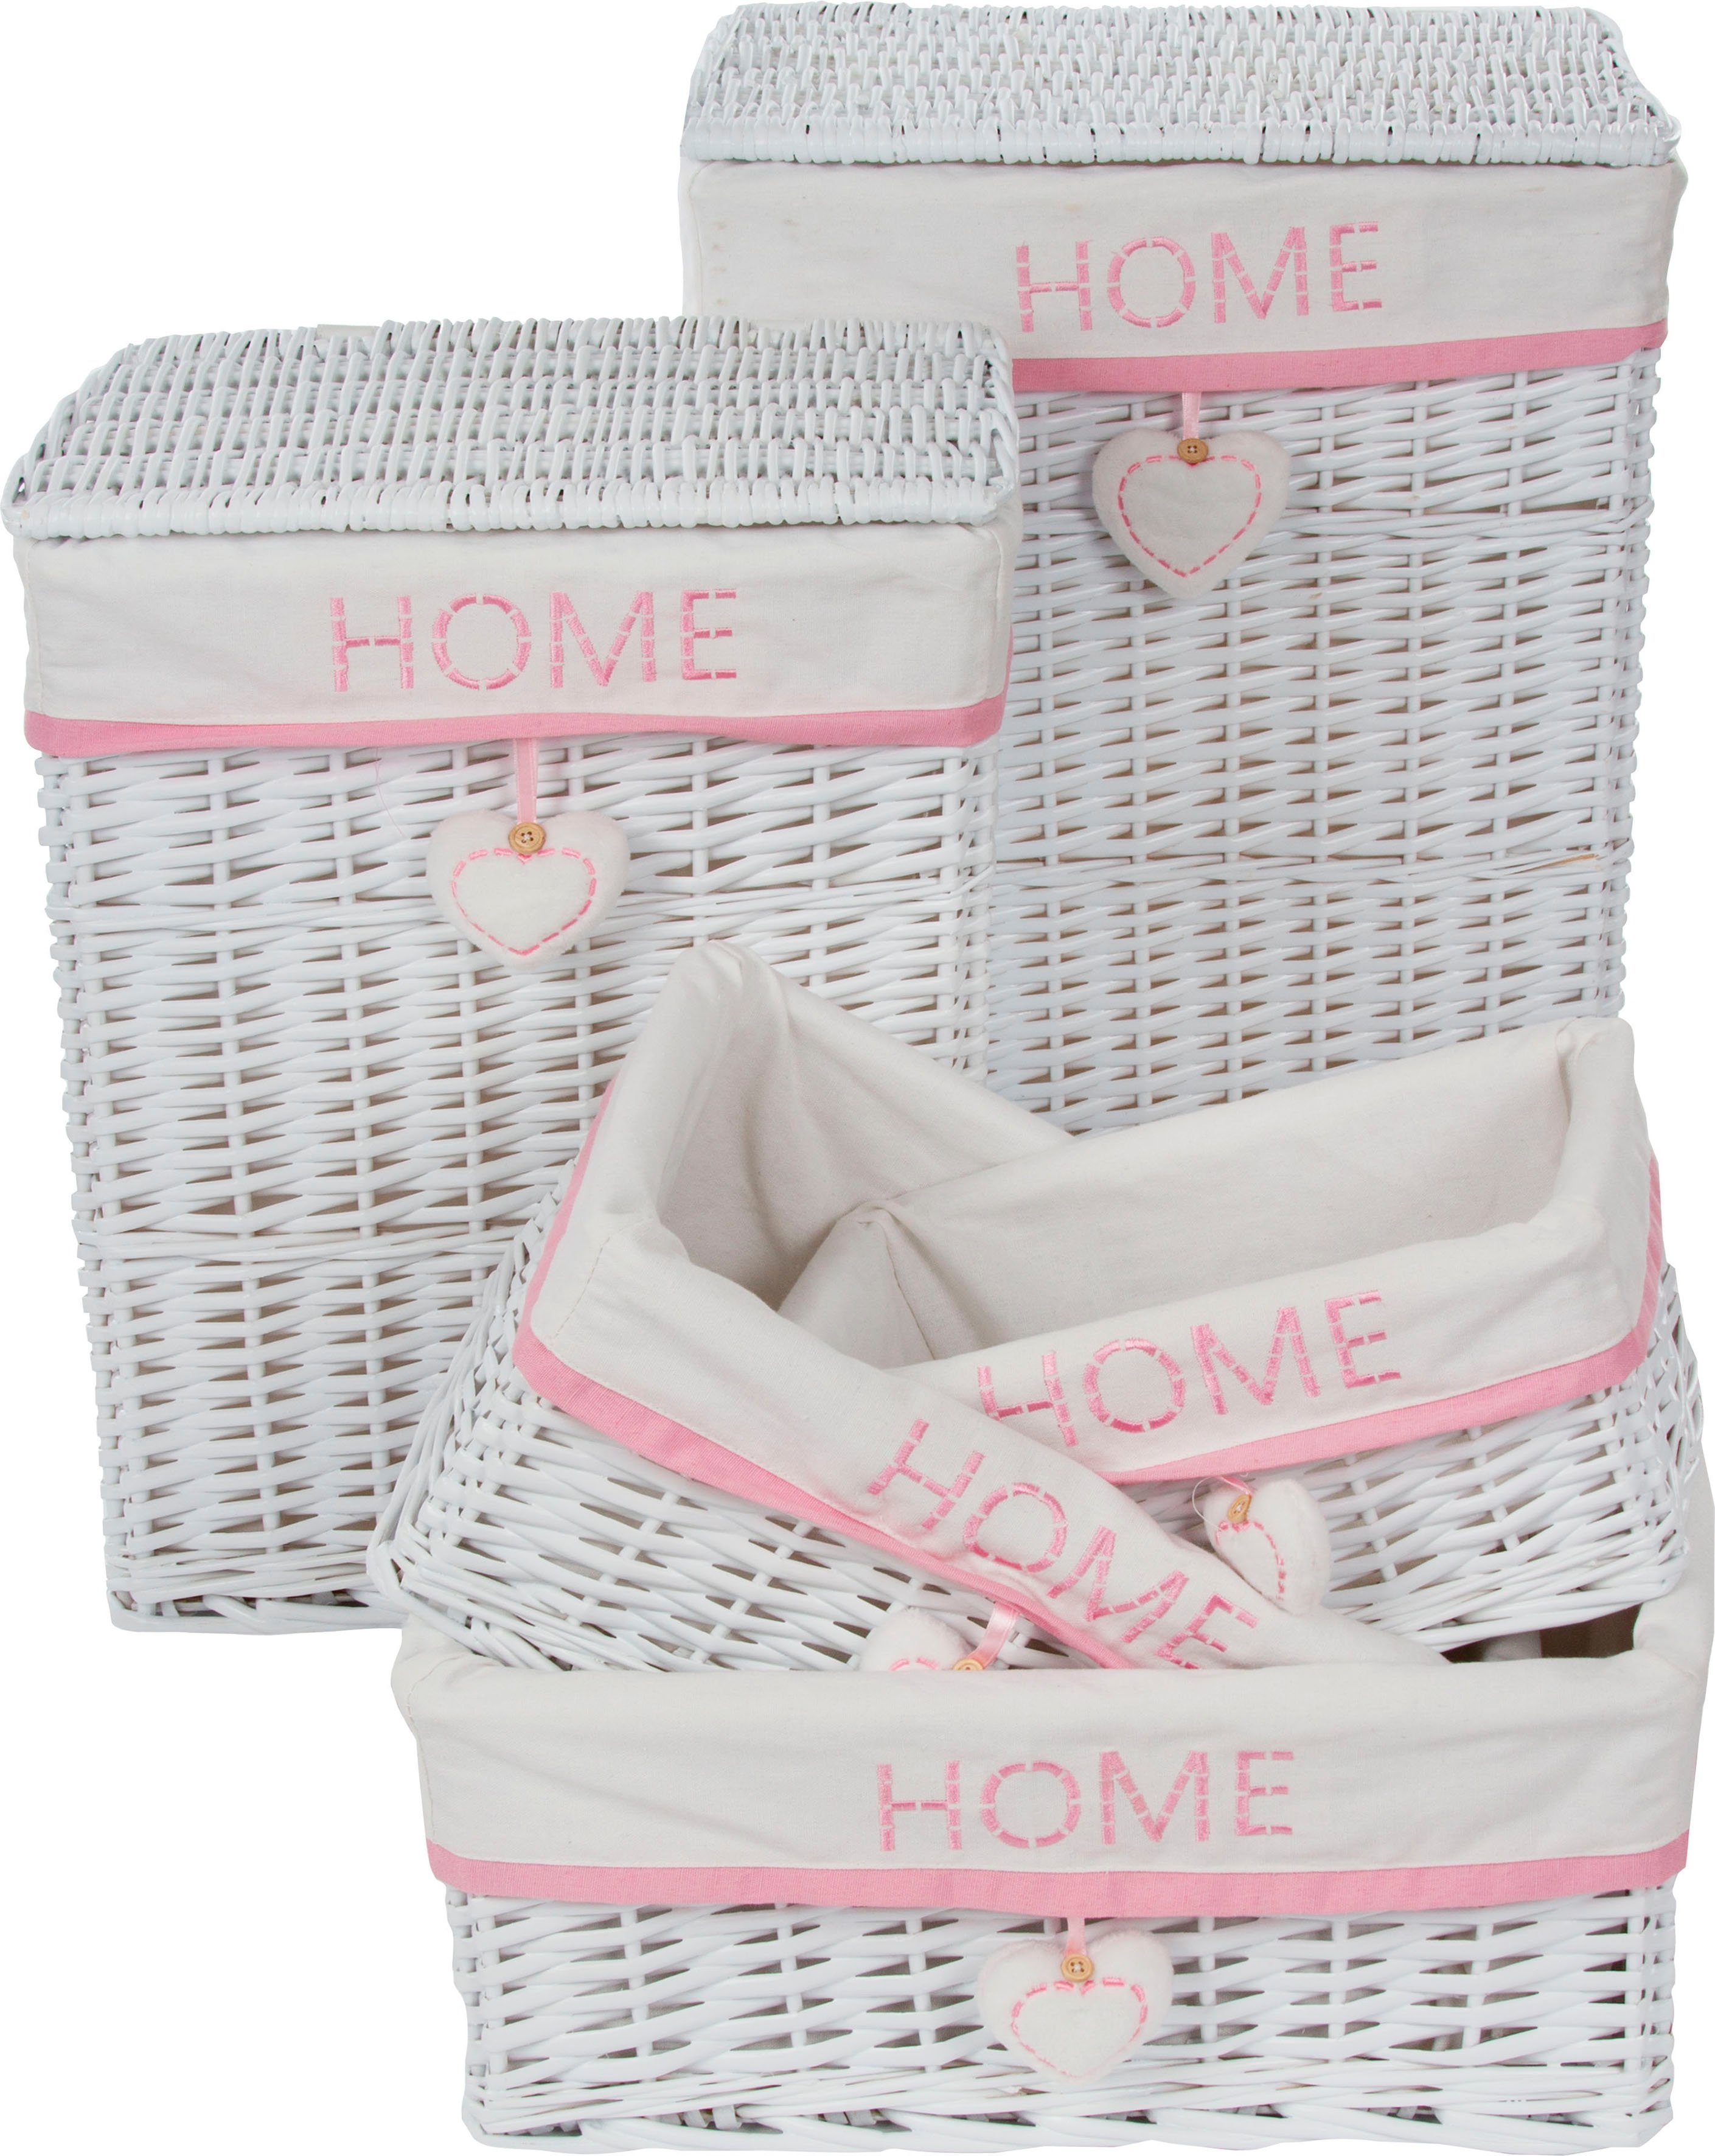 Home affaire Wäschekorb »Home« (Set, 5 Stück), weiß/pink-kaufen